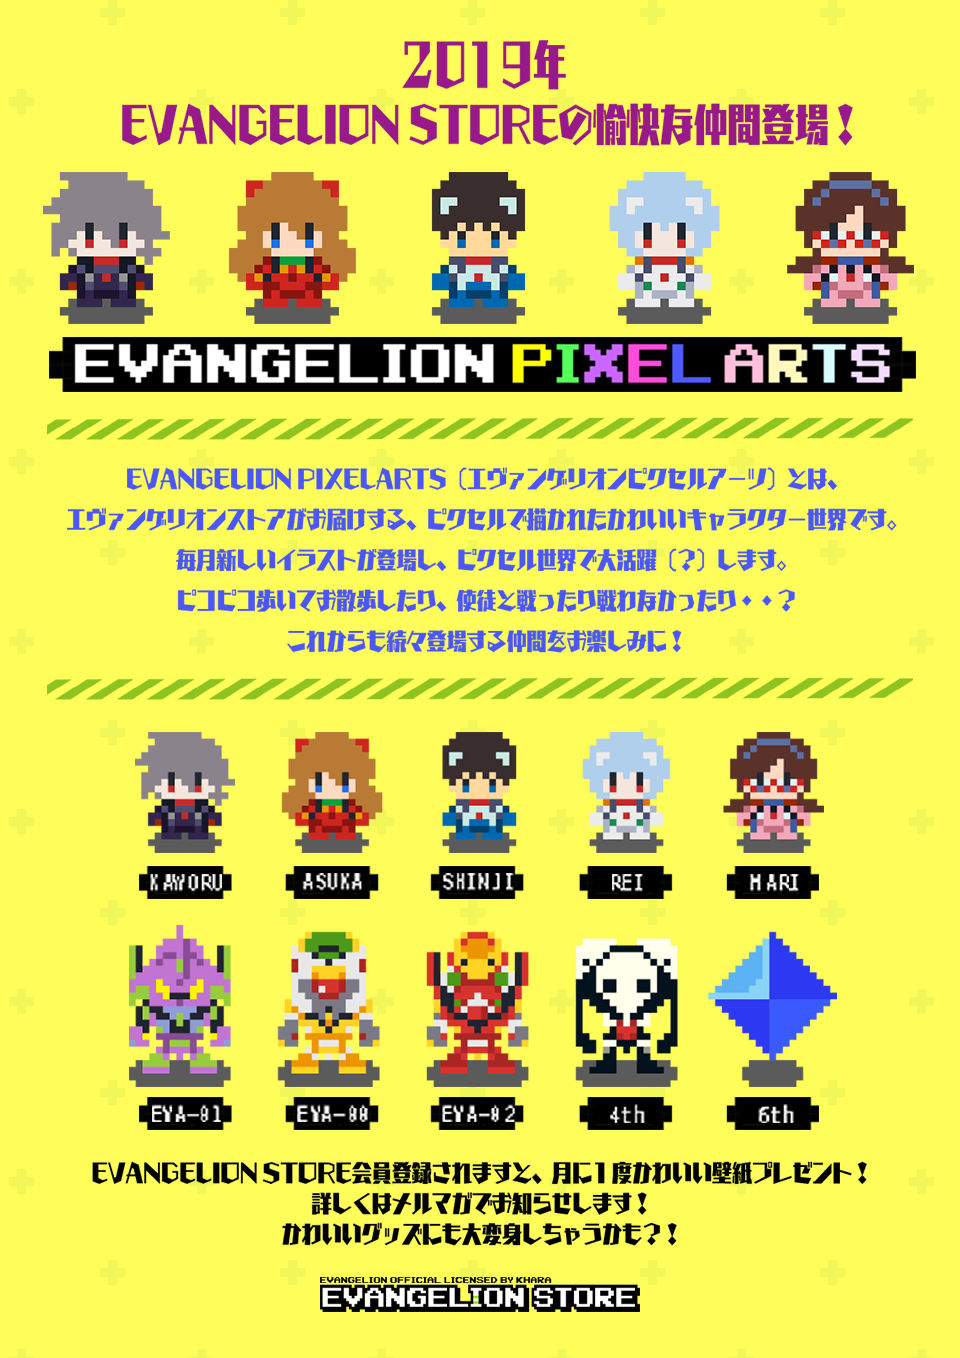 エヴァストア ピクセルで描かれたかわいいキャラクター世界 Evangelion Pixelarts エヴァンゲリオンピクセルアーツ 登場 E2 Plus